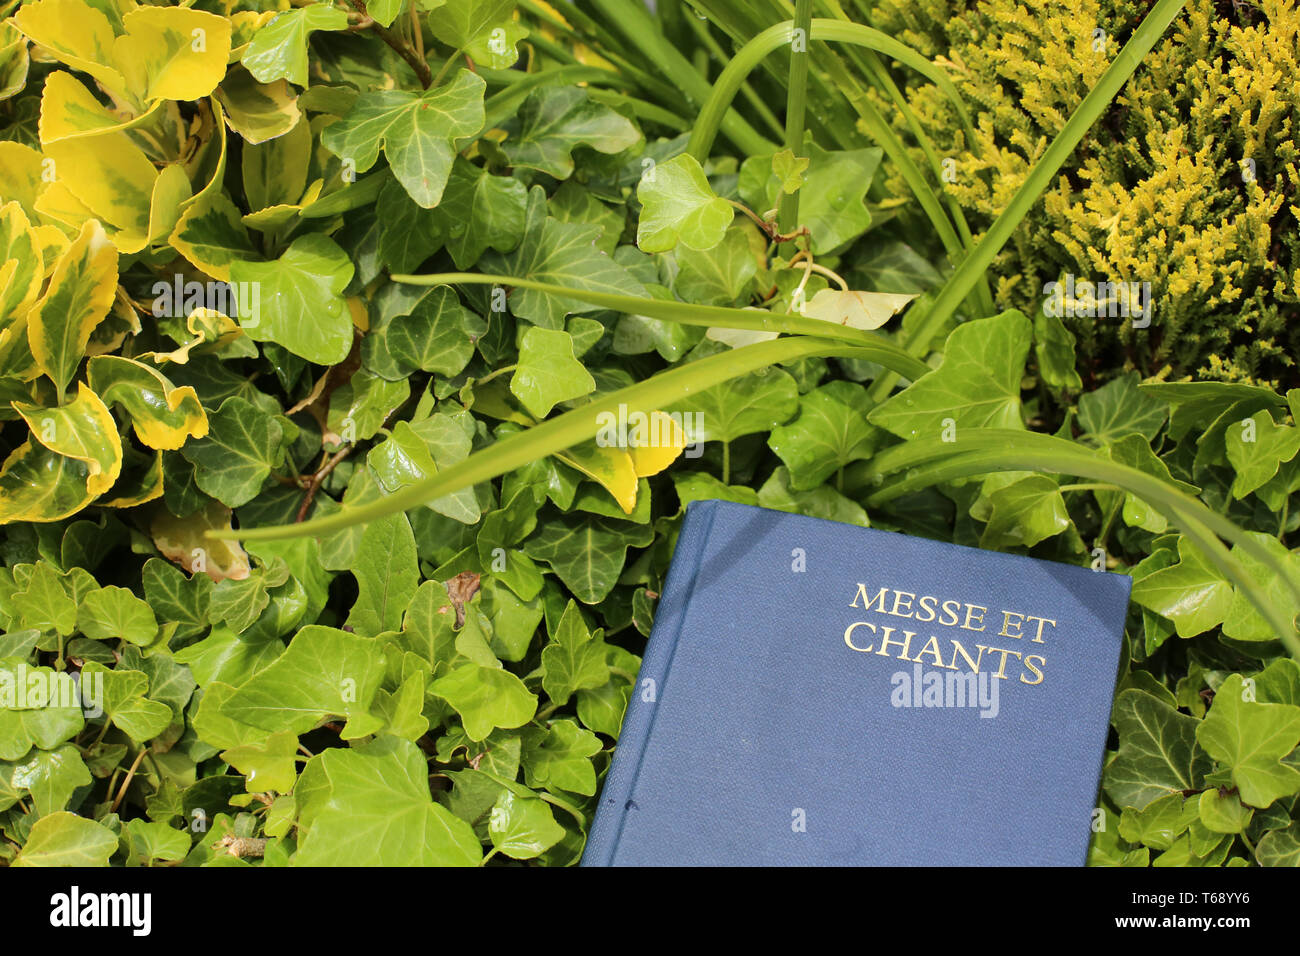 Livre de messe et chants dans du Lierre. Foto Stock